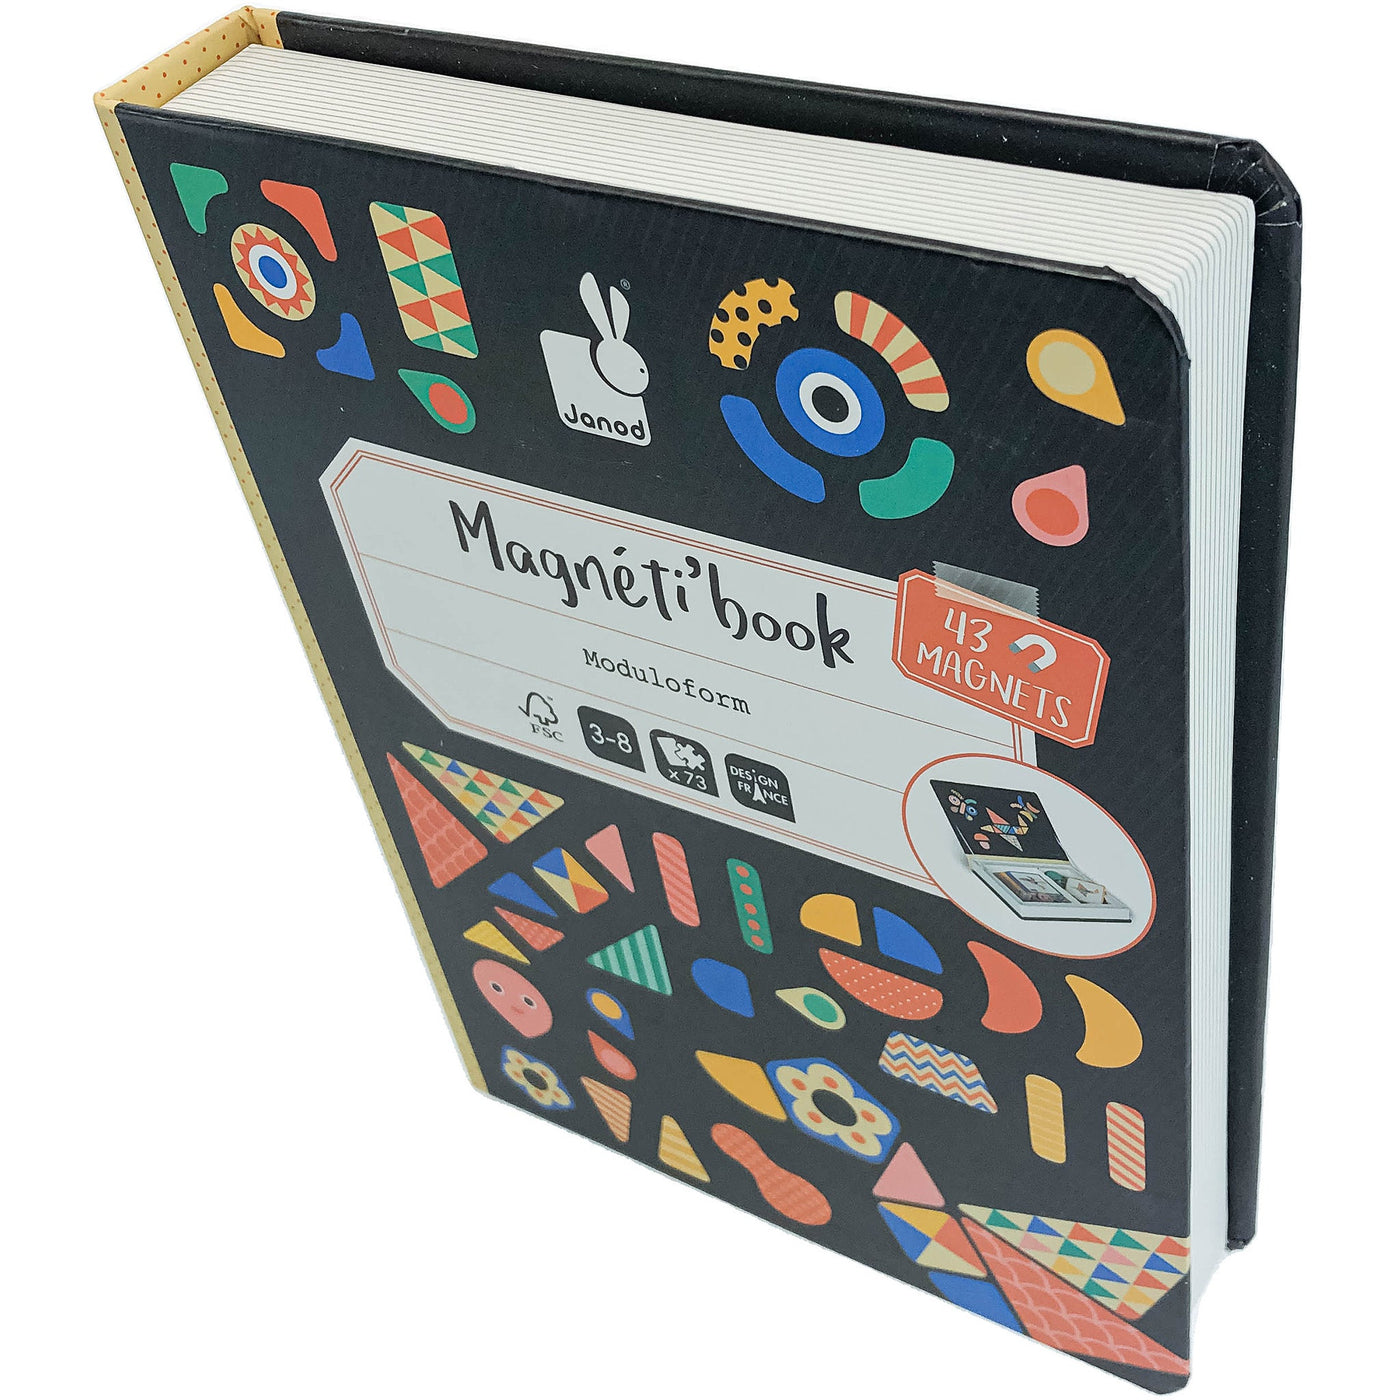 Ardoise et formes magnétiques "Magnéti'book Moduloform" de seconde main pour enfant à partir de 3 ans - photo principale